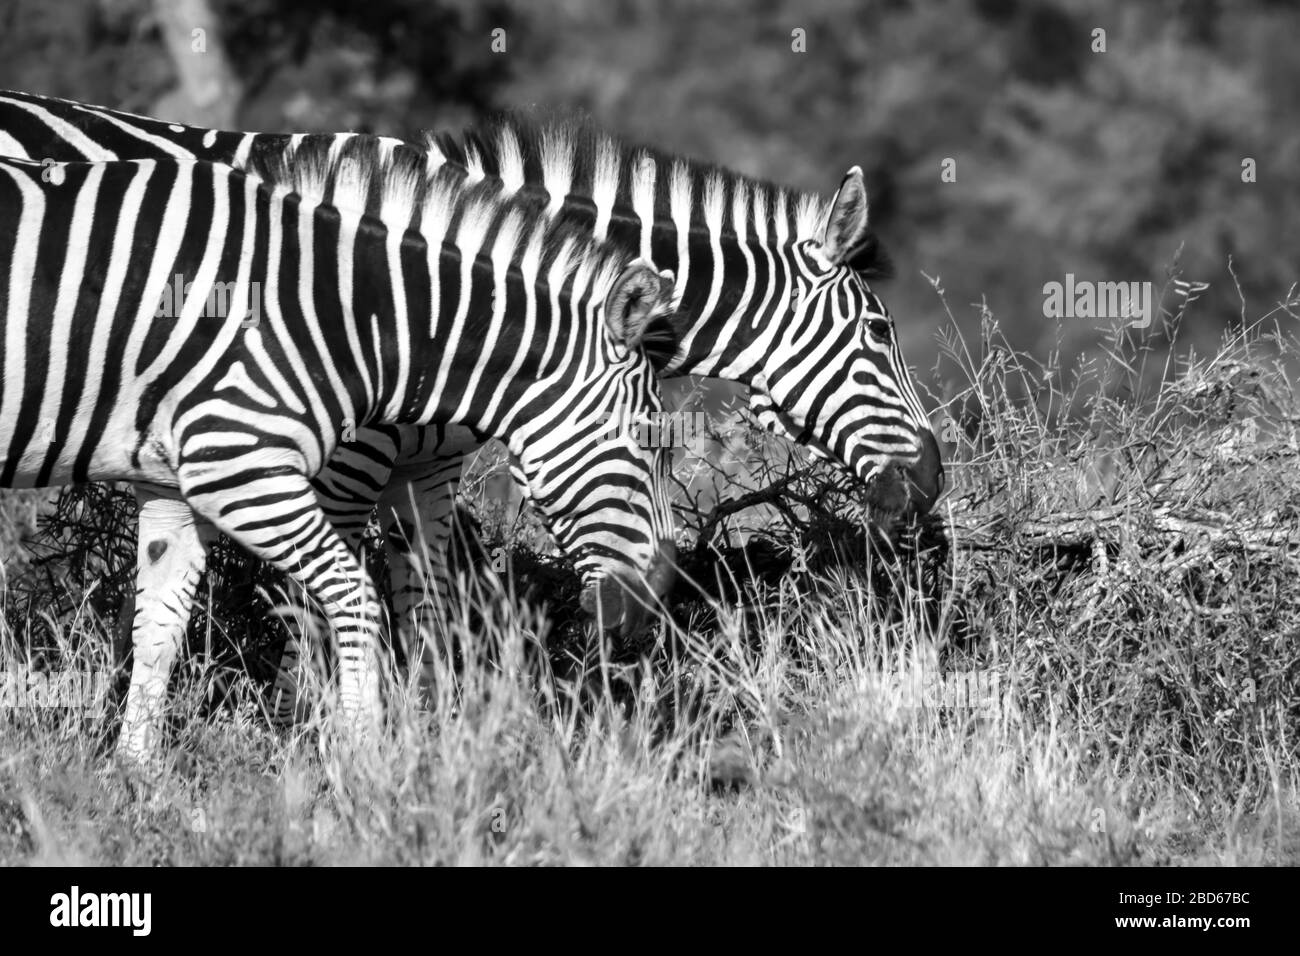 Deux Zèbres (Equus Quagga burchelli) paissent tout en marchant dans le parc national Kruger, en Afrique du Sud en monochrome Banque D'Images